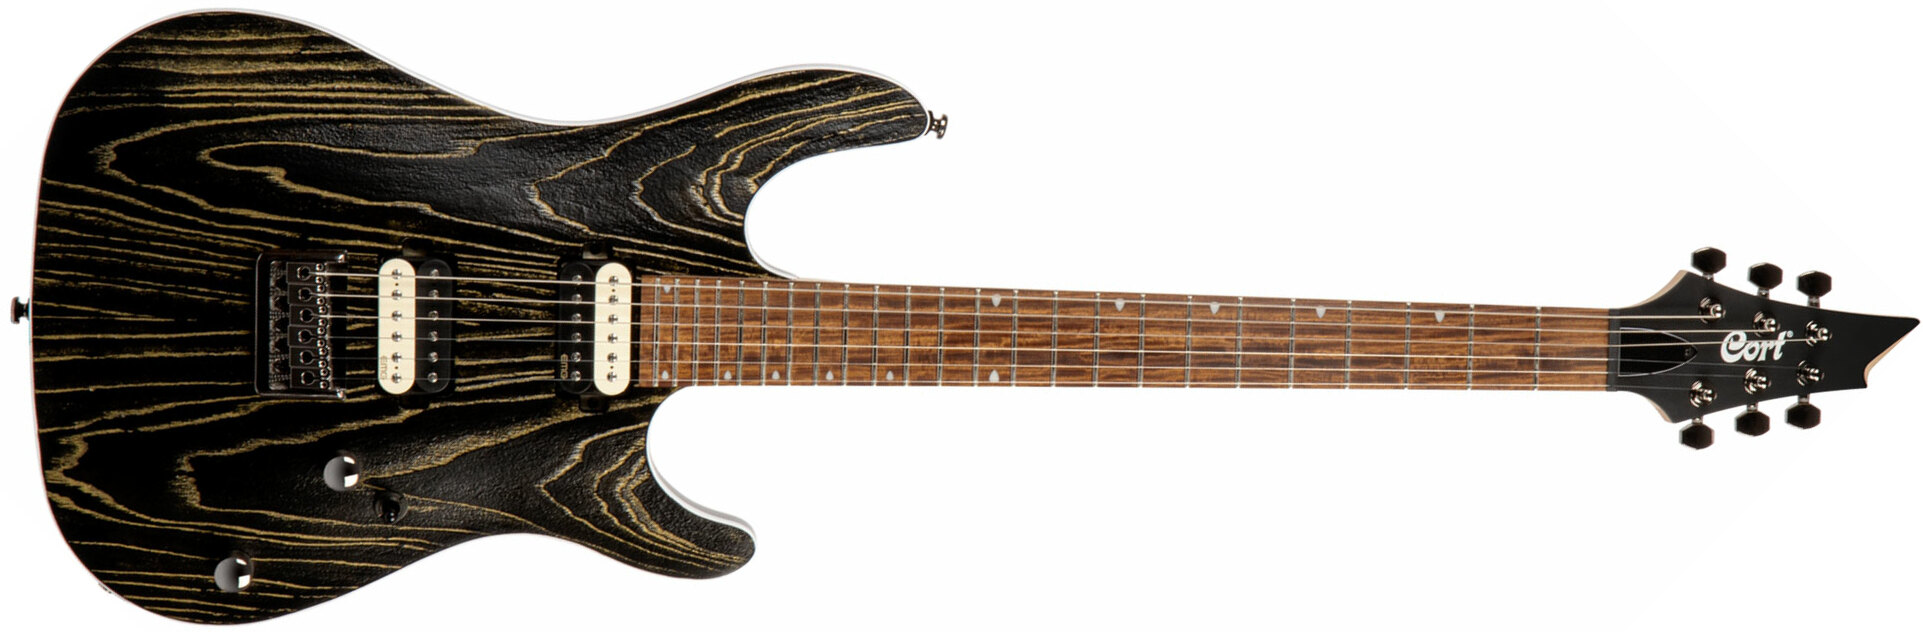 Cort Kx300 Ebr Hh Emg Ht Jat - Etched Black Gold - Guitare Électrique Forme Str - Main picture